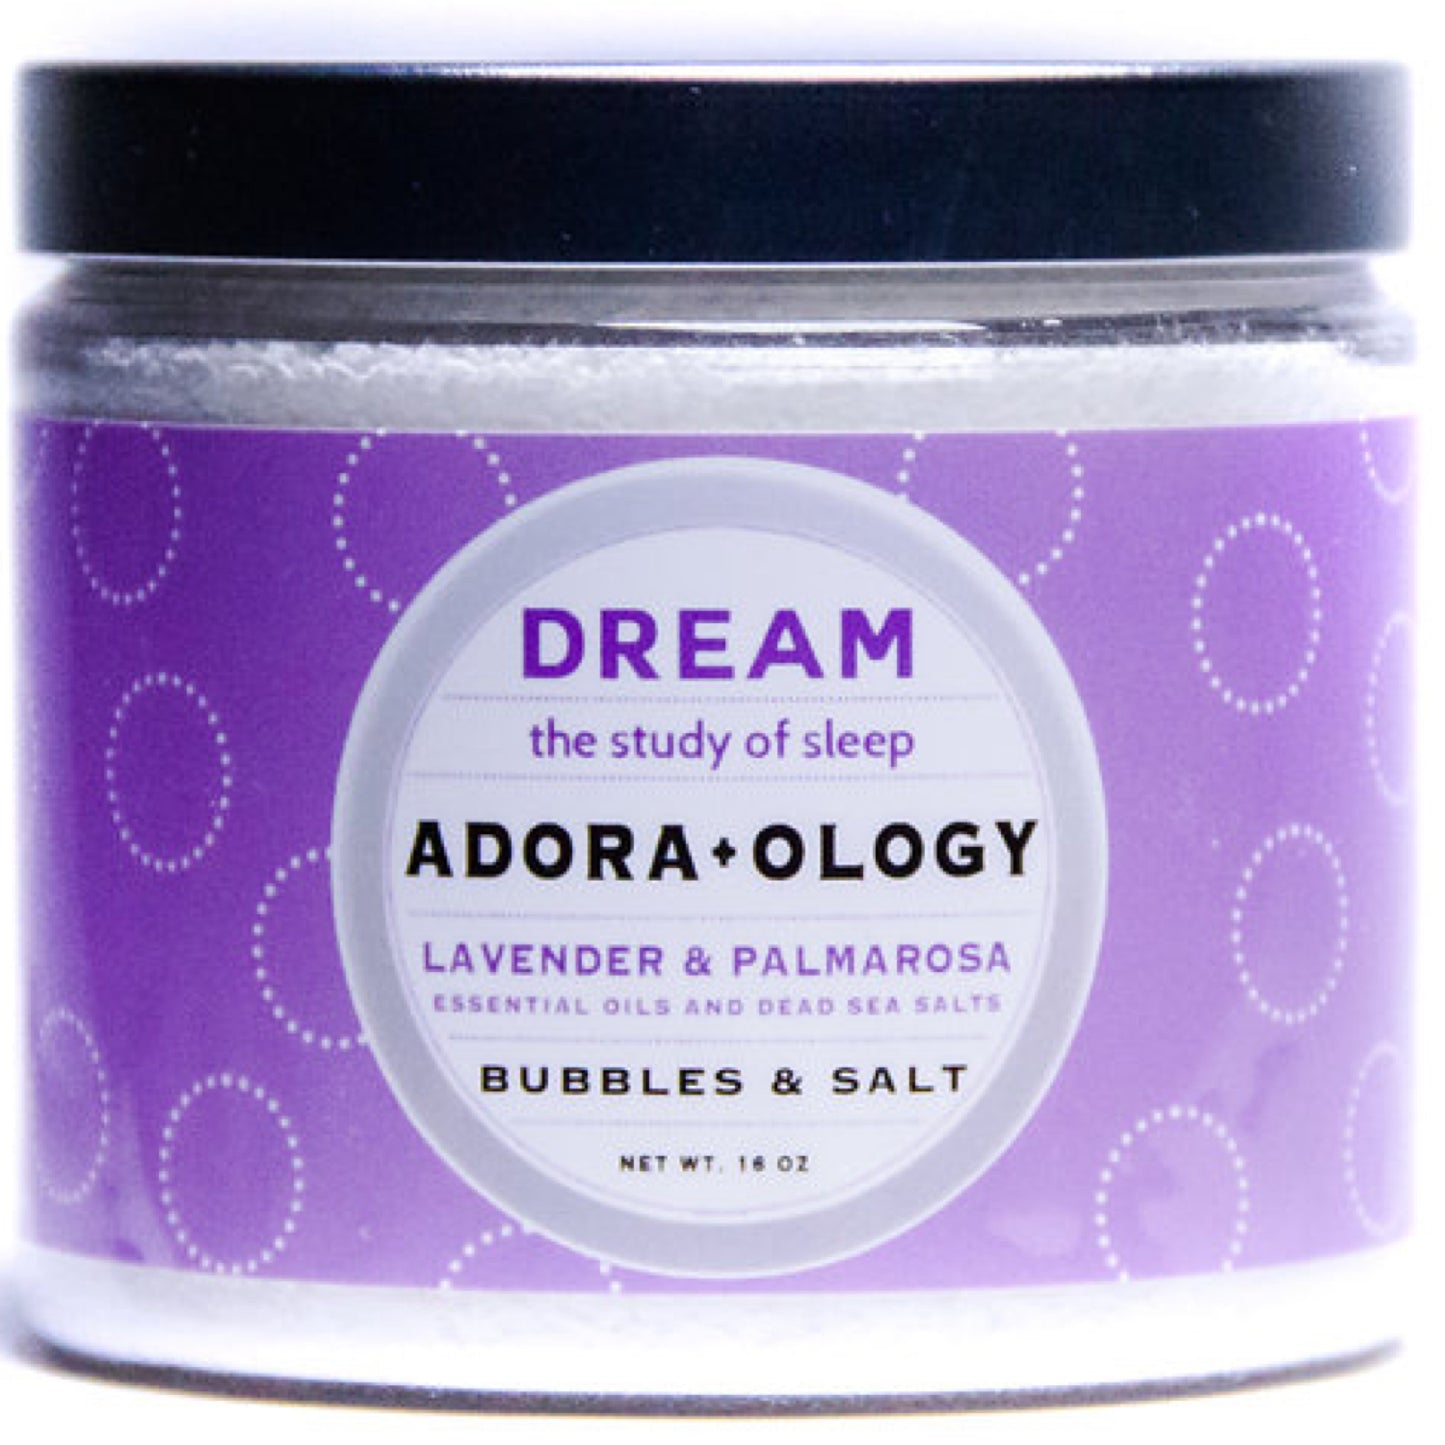 Adora+ology Dream Bubbles & Salt